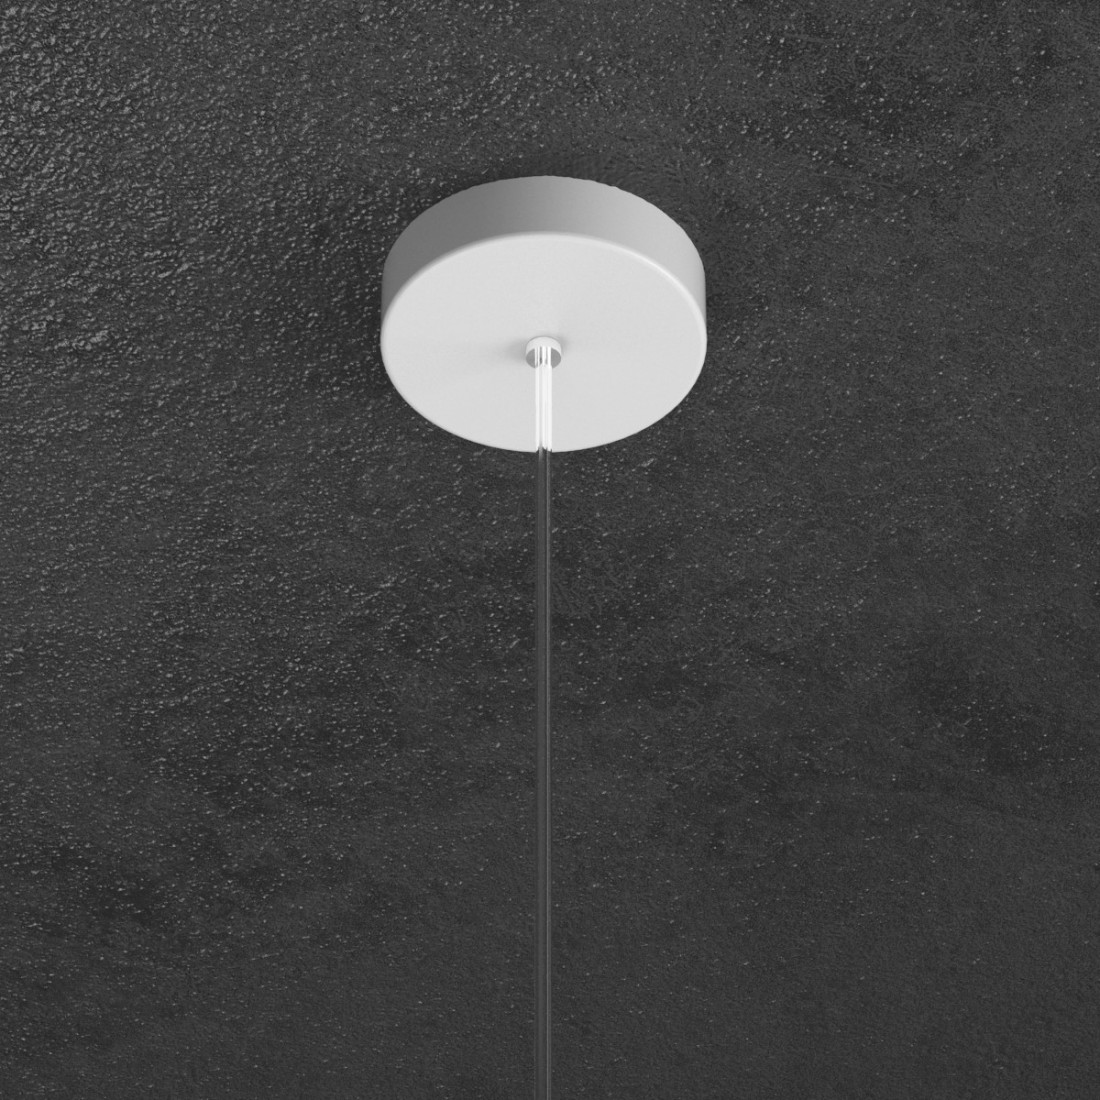 Sospensione TP-SHAPE 1143 S10 GX53 LED metallo bianco grigio sabbia lampada parete cilindro moderna interno